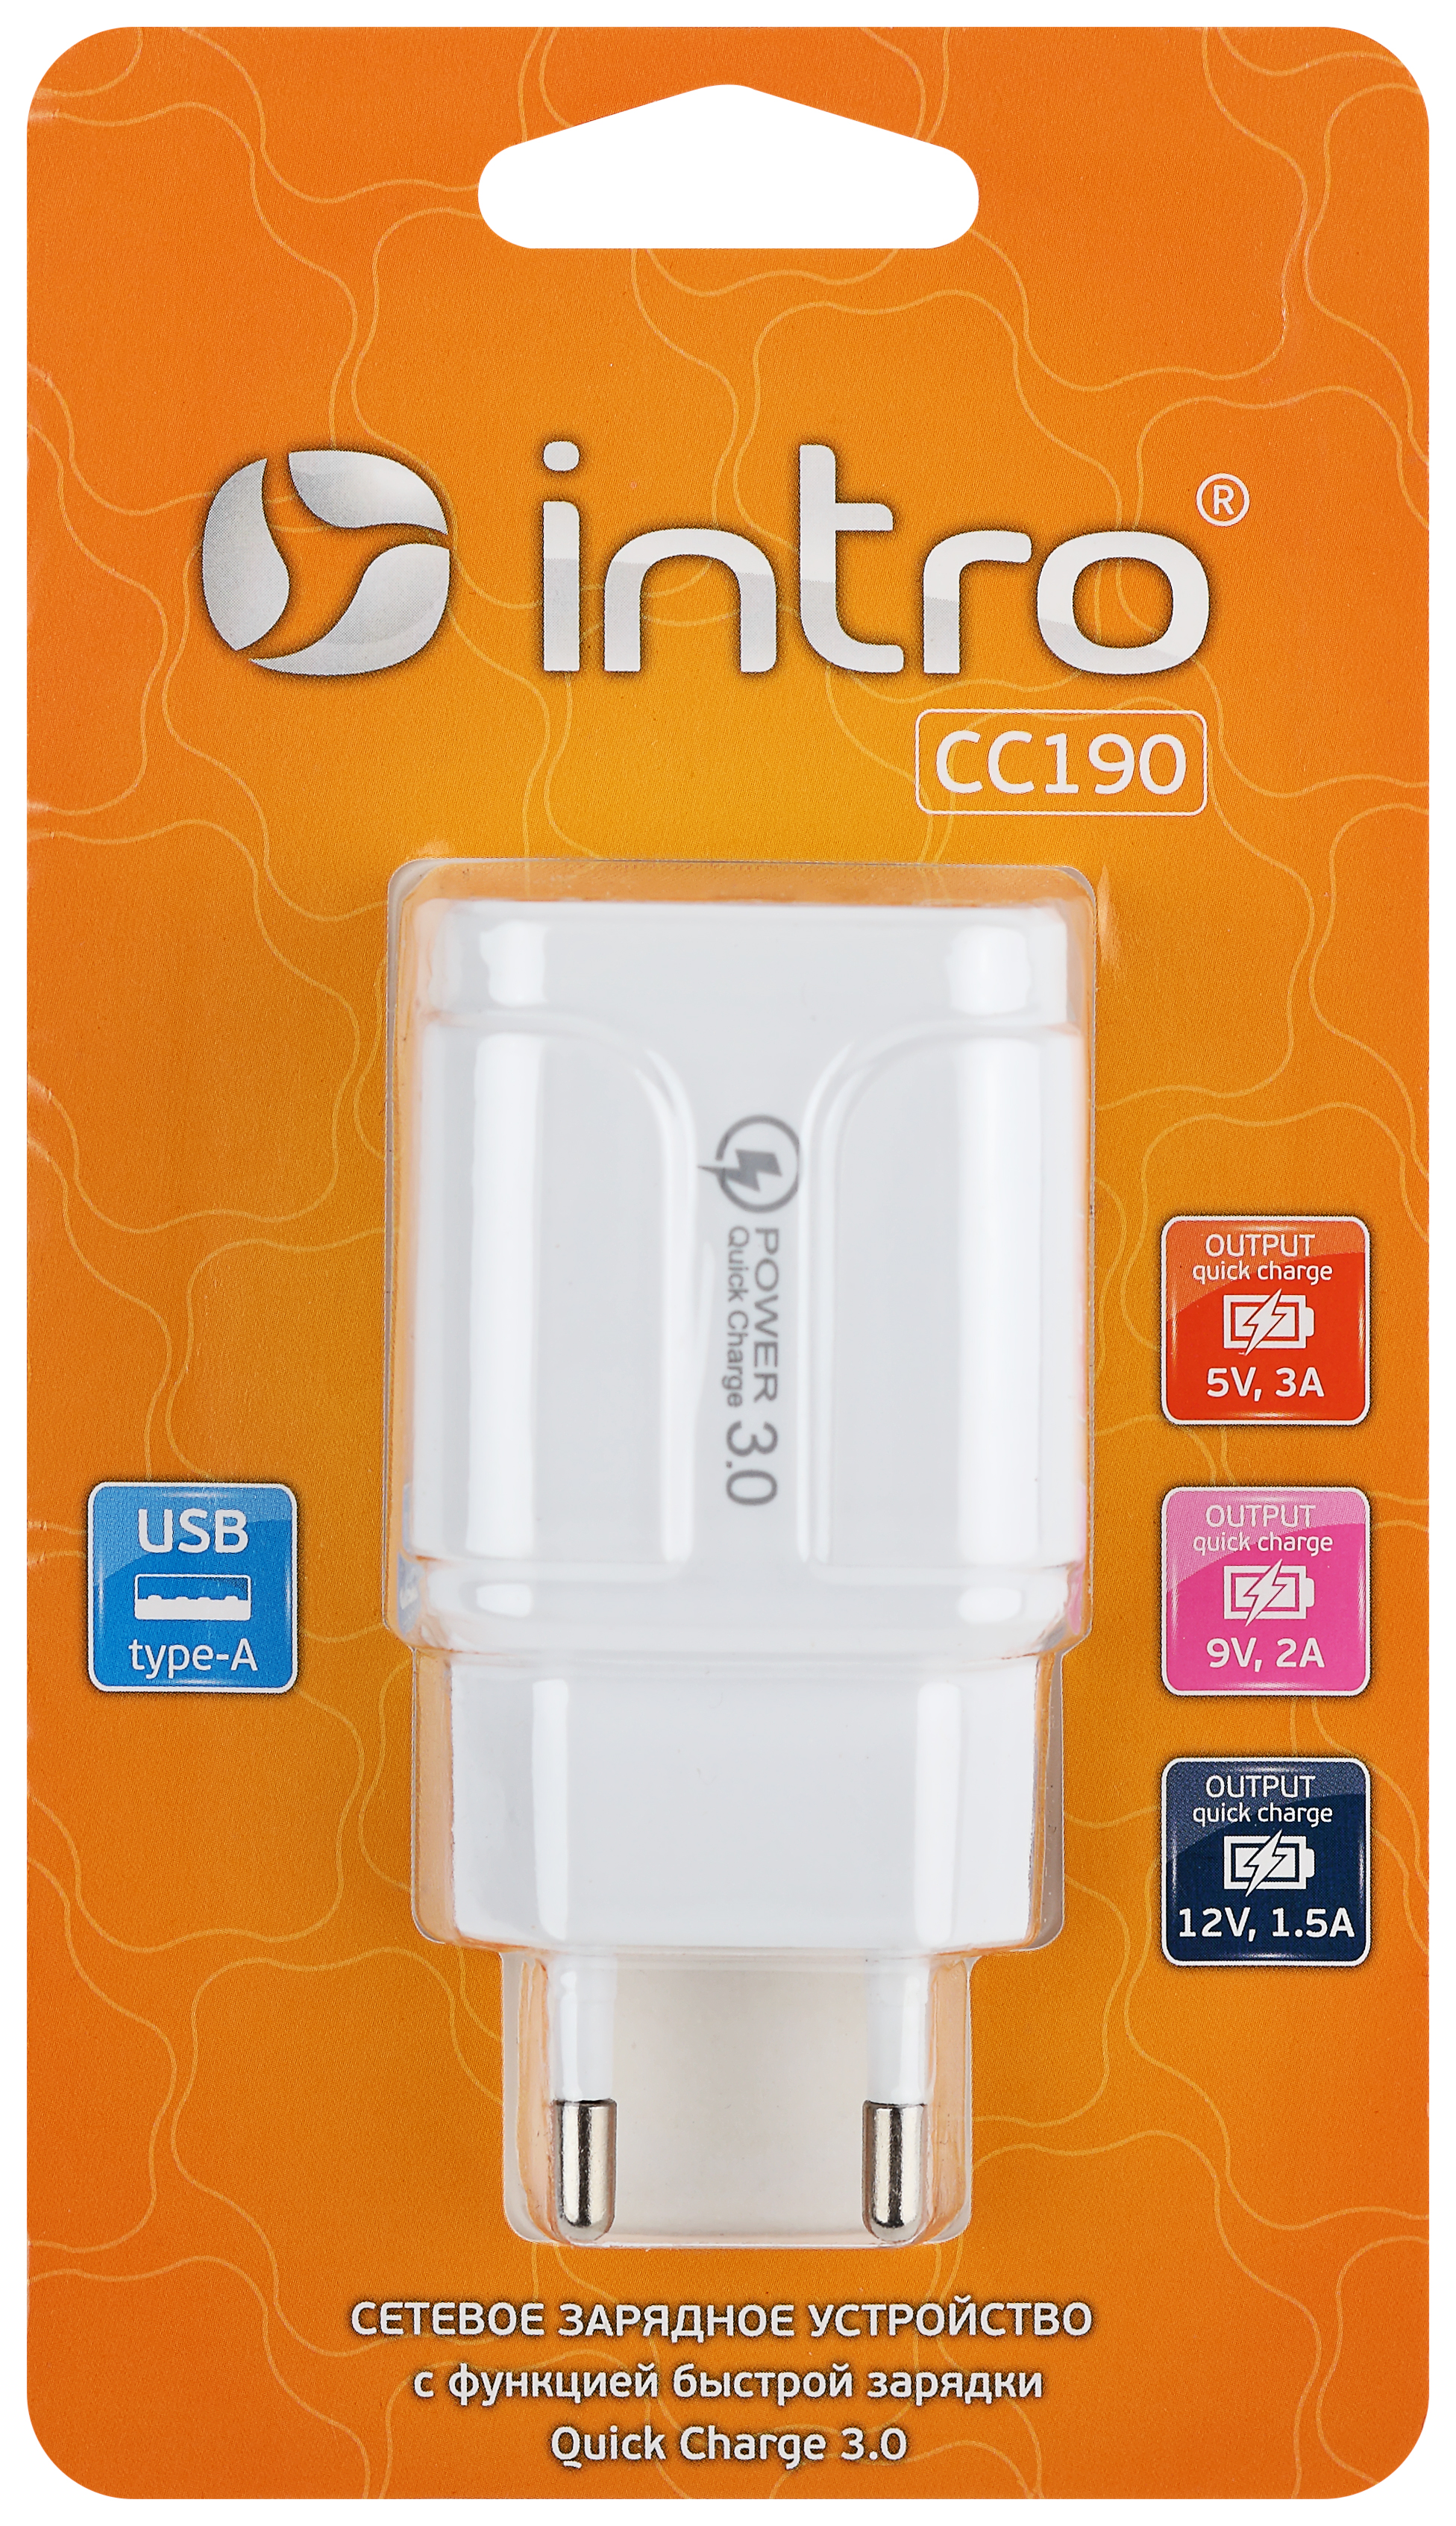 Сетевое зарядное устройство Intro CC190 1 USB быстрая зарядка QC3.0 3A белая